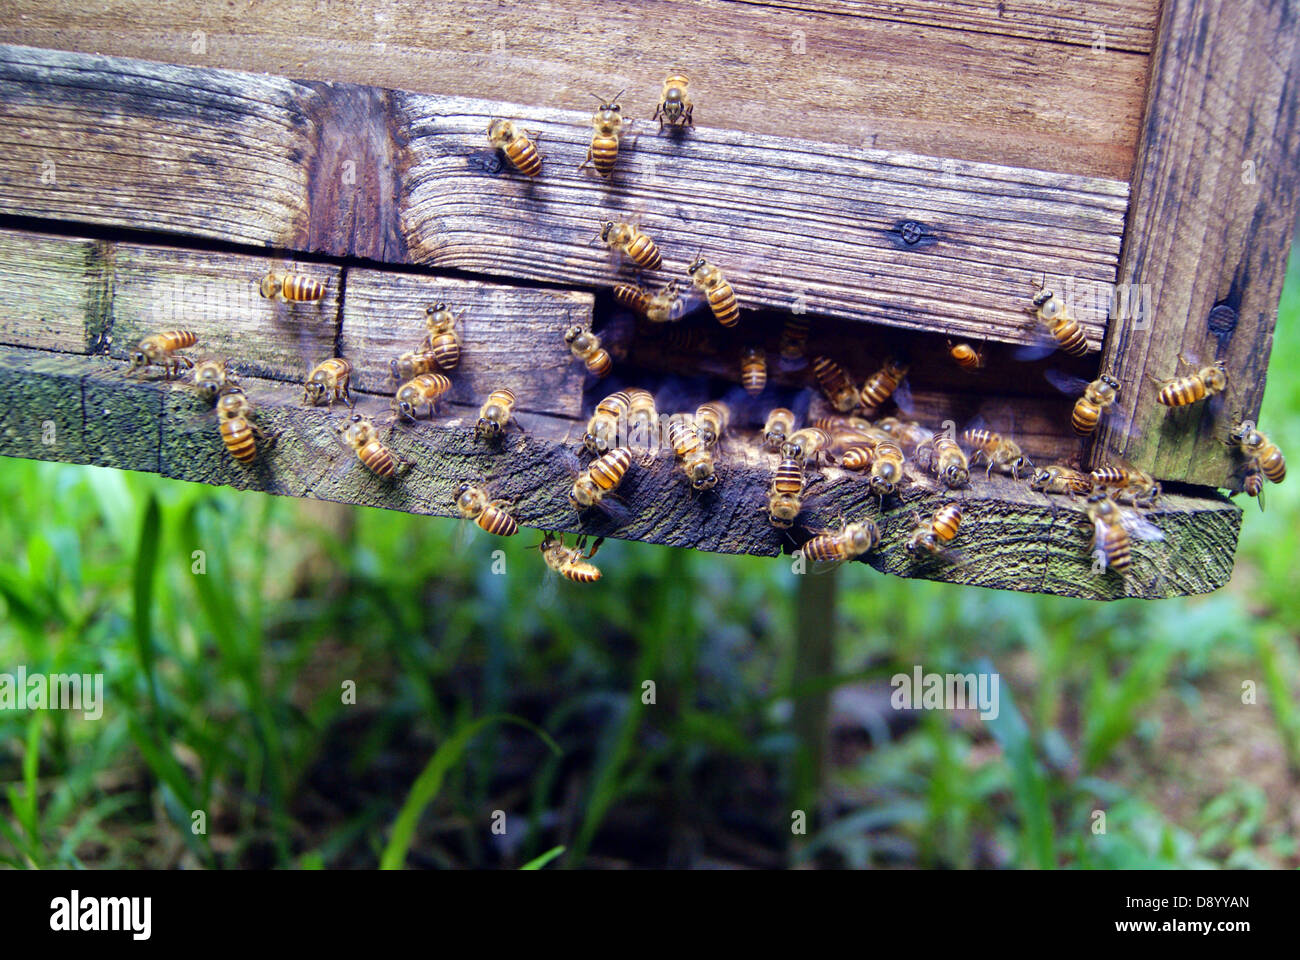 Imkerei, in Shenzhen, China. Bienen stellen Honig, das beste Geschenk zu Mensch. Stockfoto